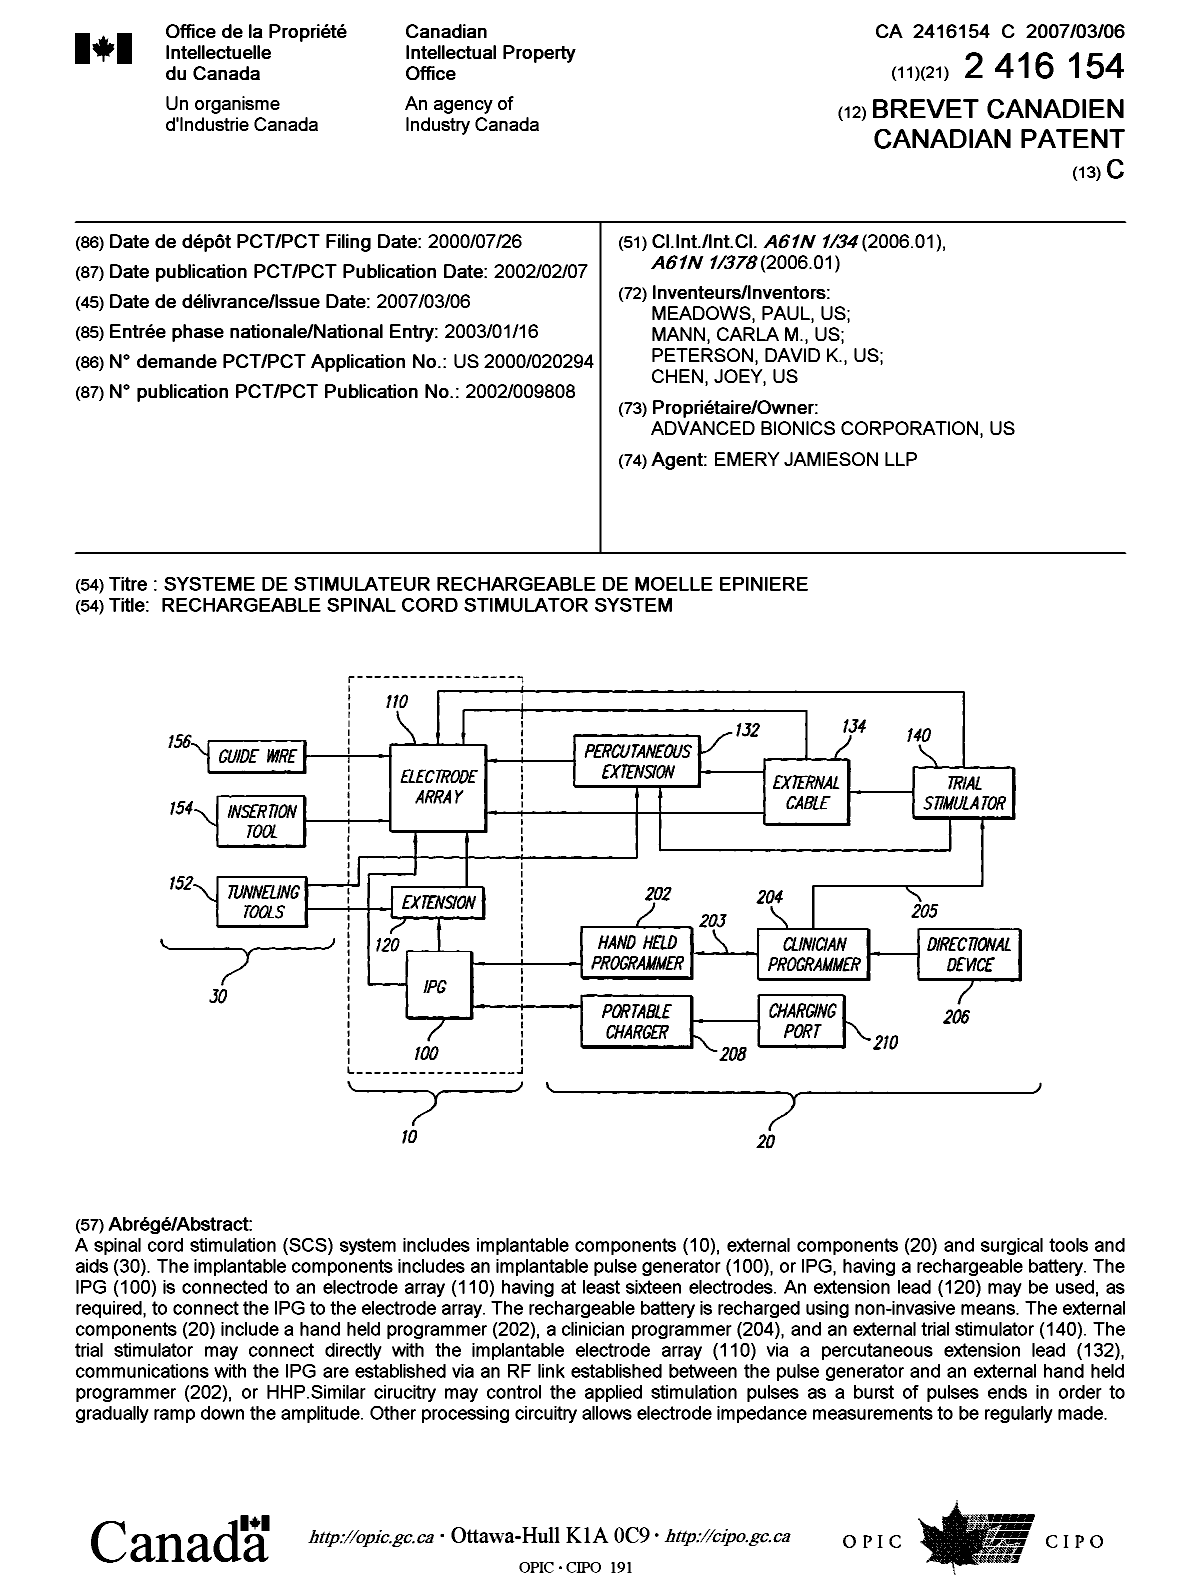 Document de brevet canadien 2416154. Page couverture 20070207. Image 1 de 1